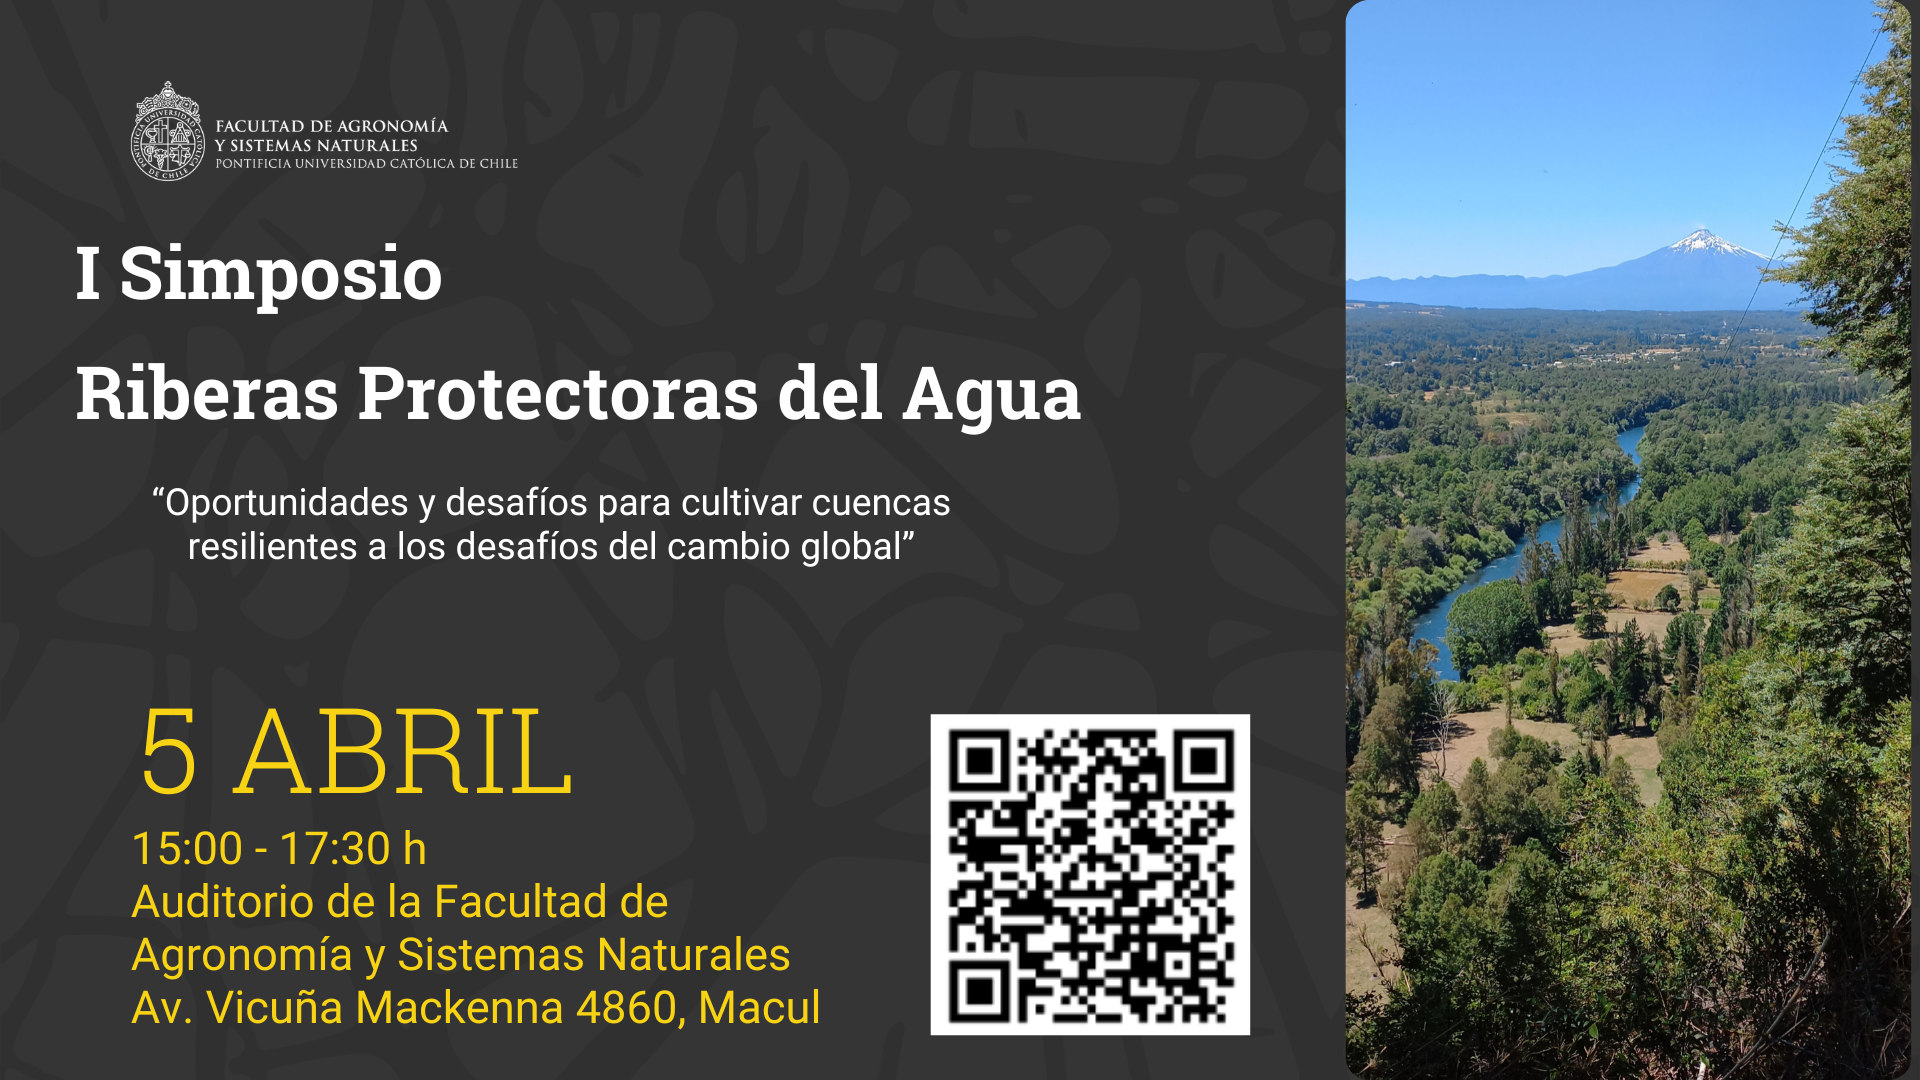 Afiche_simposio_Riberas_Protectoras_del_Agua_1.png